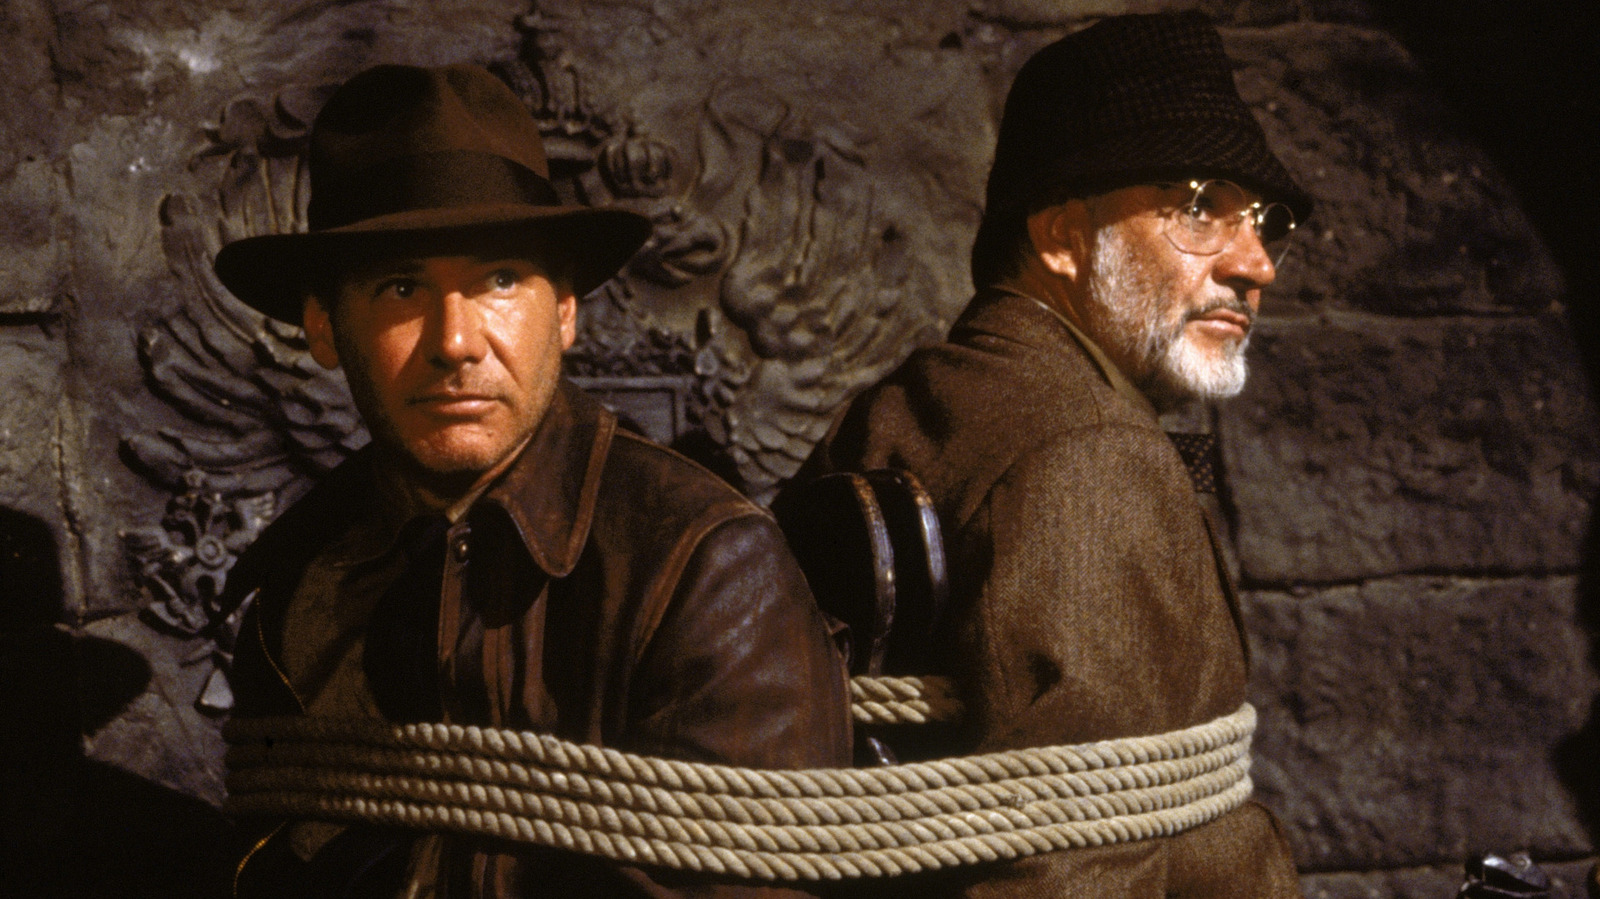 A maior contribuição de Steven Spielberg para a história de Indiana Jones ocorreu na última cruzada